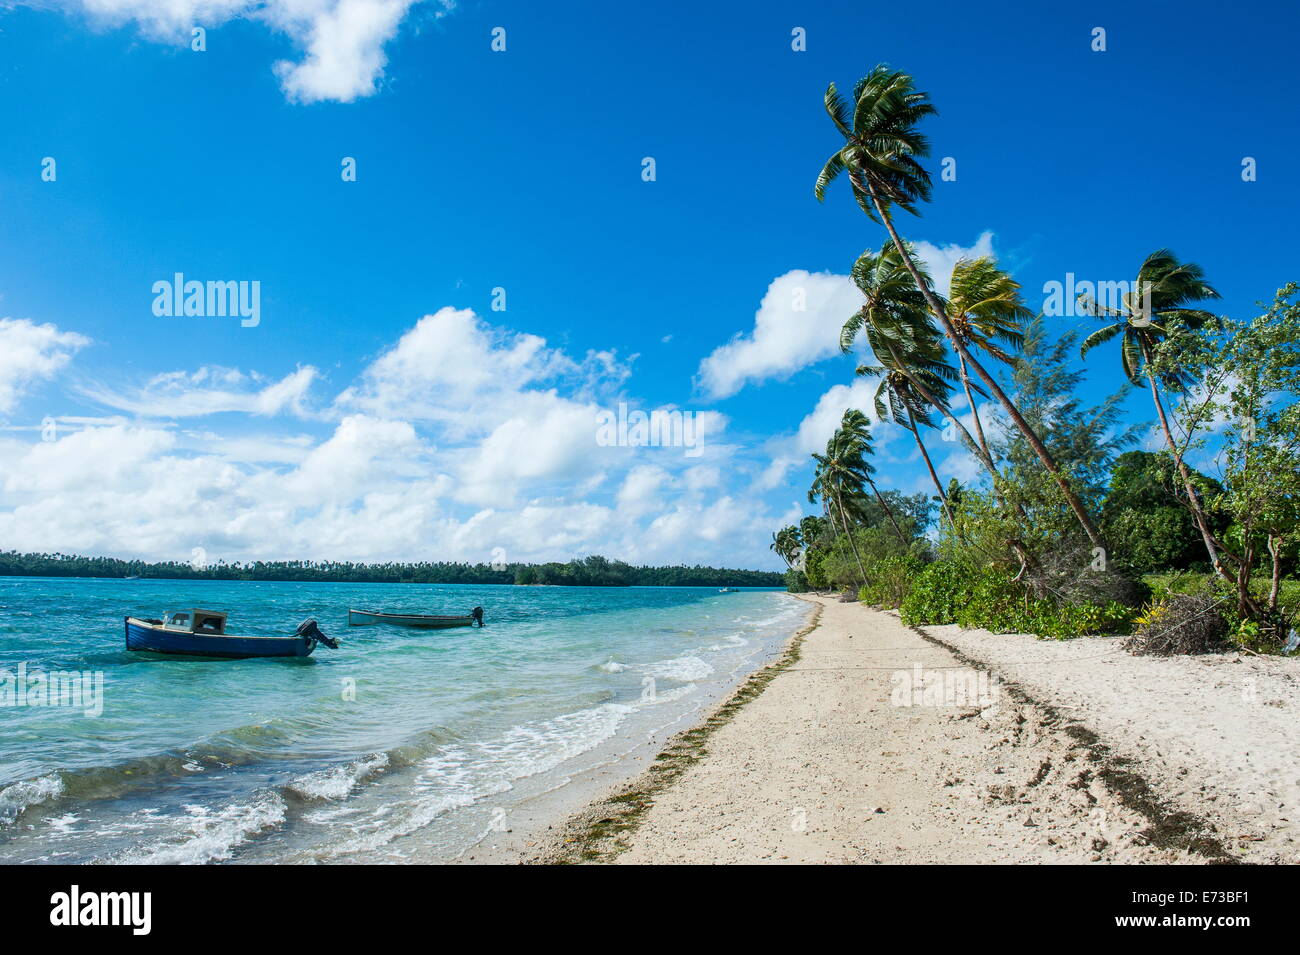 Plage de sable blanc bordée de cocotiers sur un îlot de Vavau, Vavau, Tonga, Pacifique Sud, du Pacifique Banque D'Images